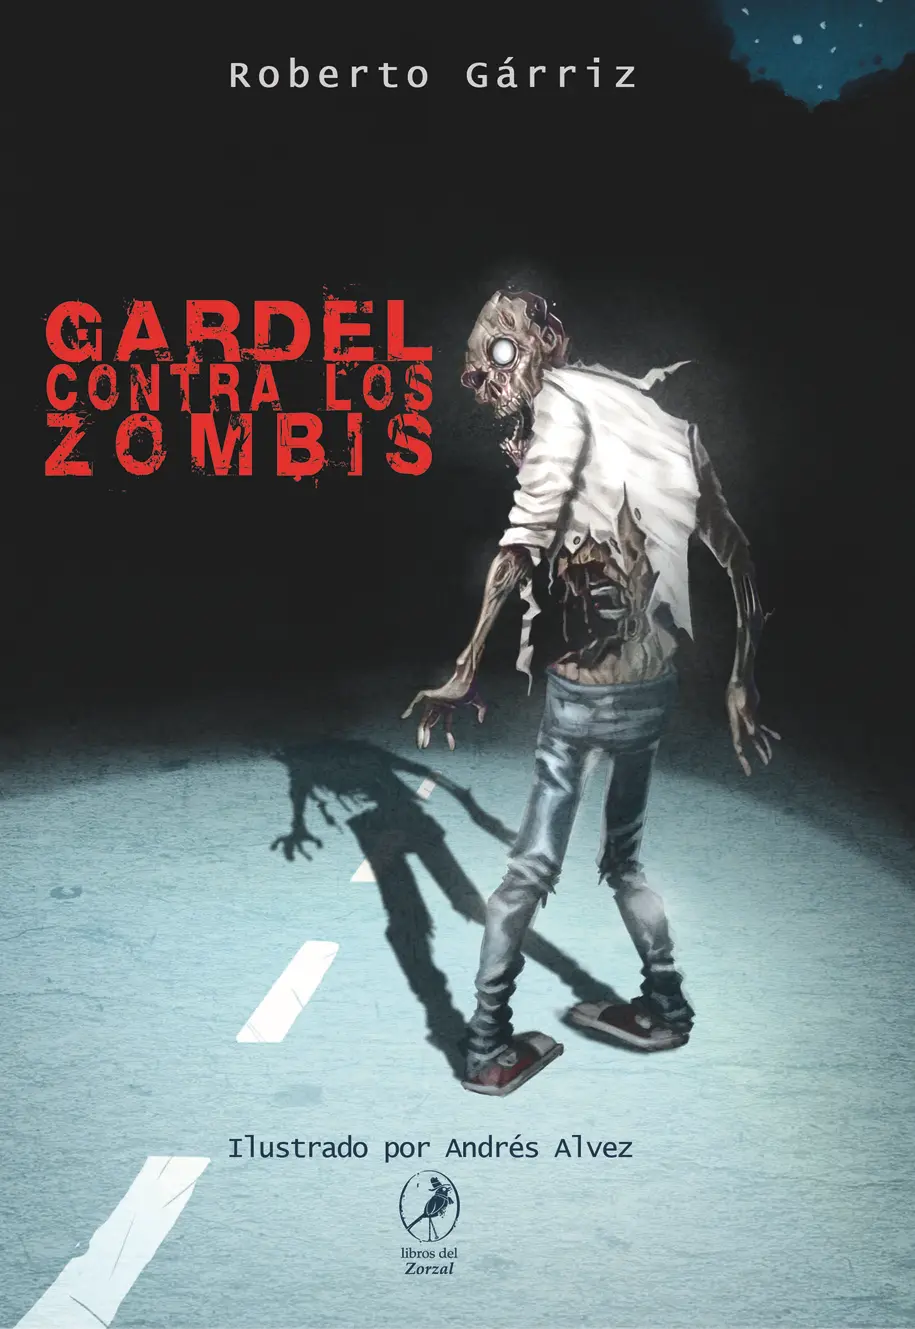 Roberto Gárriz Gardel contra los zombis Ilustraciones Andrés Alvez Gárriz - фото 1